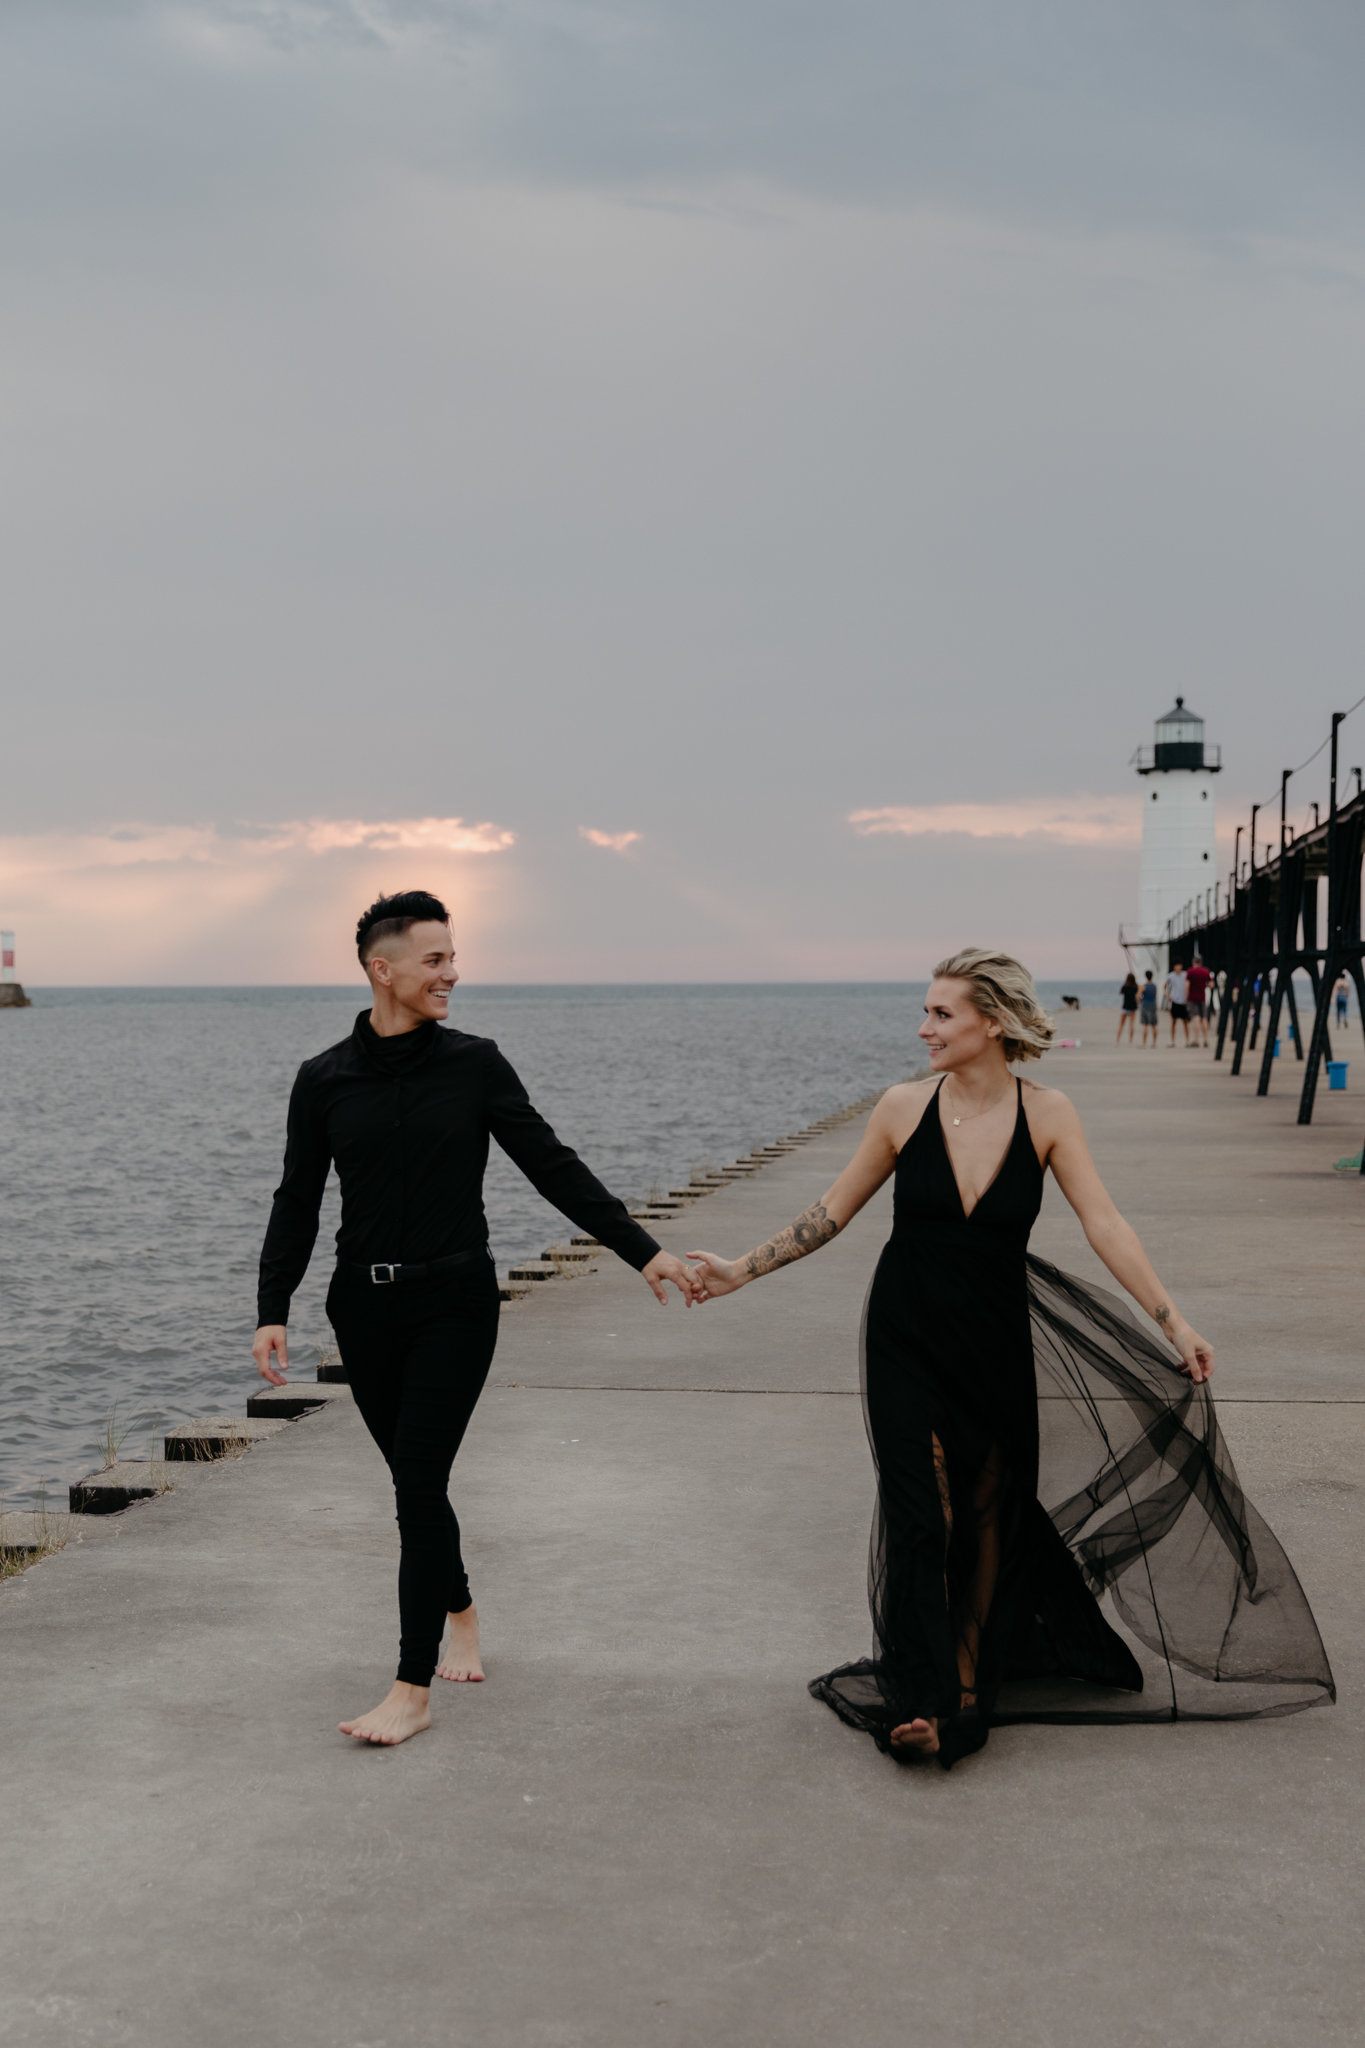 Check out this sweet LGBTQ elopement at Lake Michigan